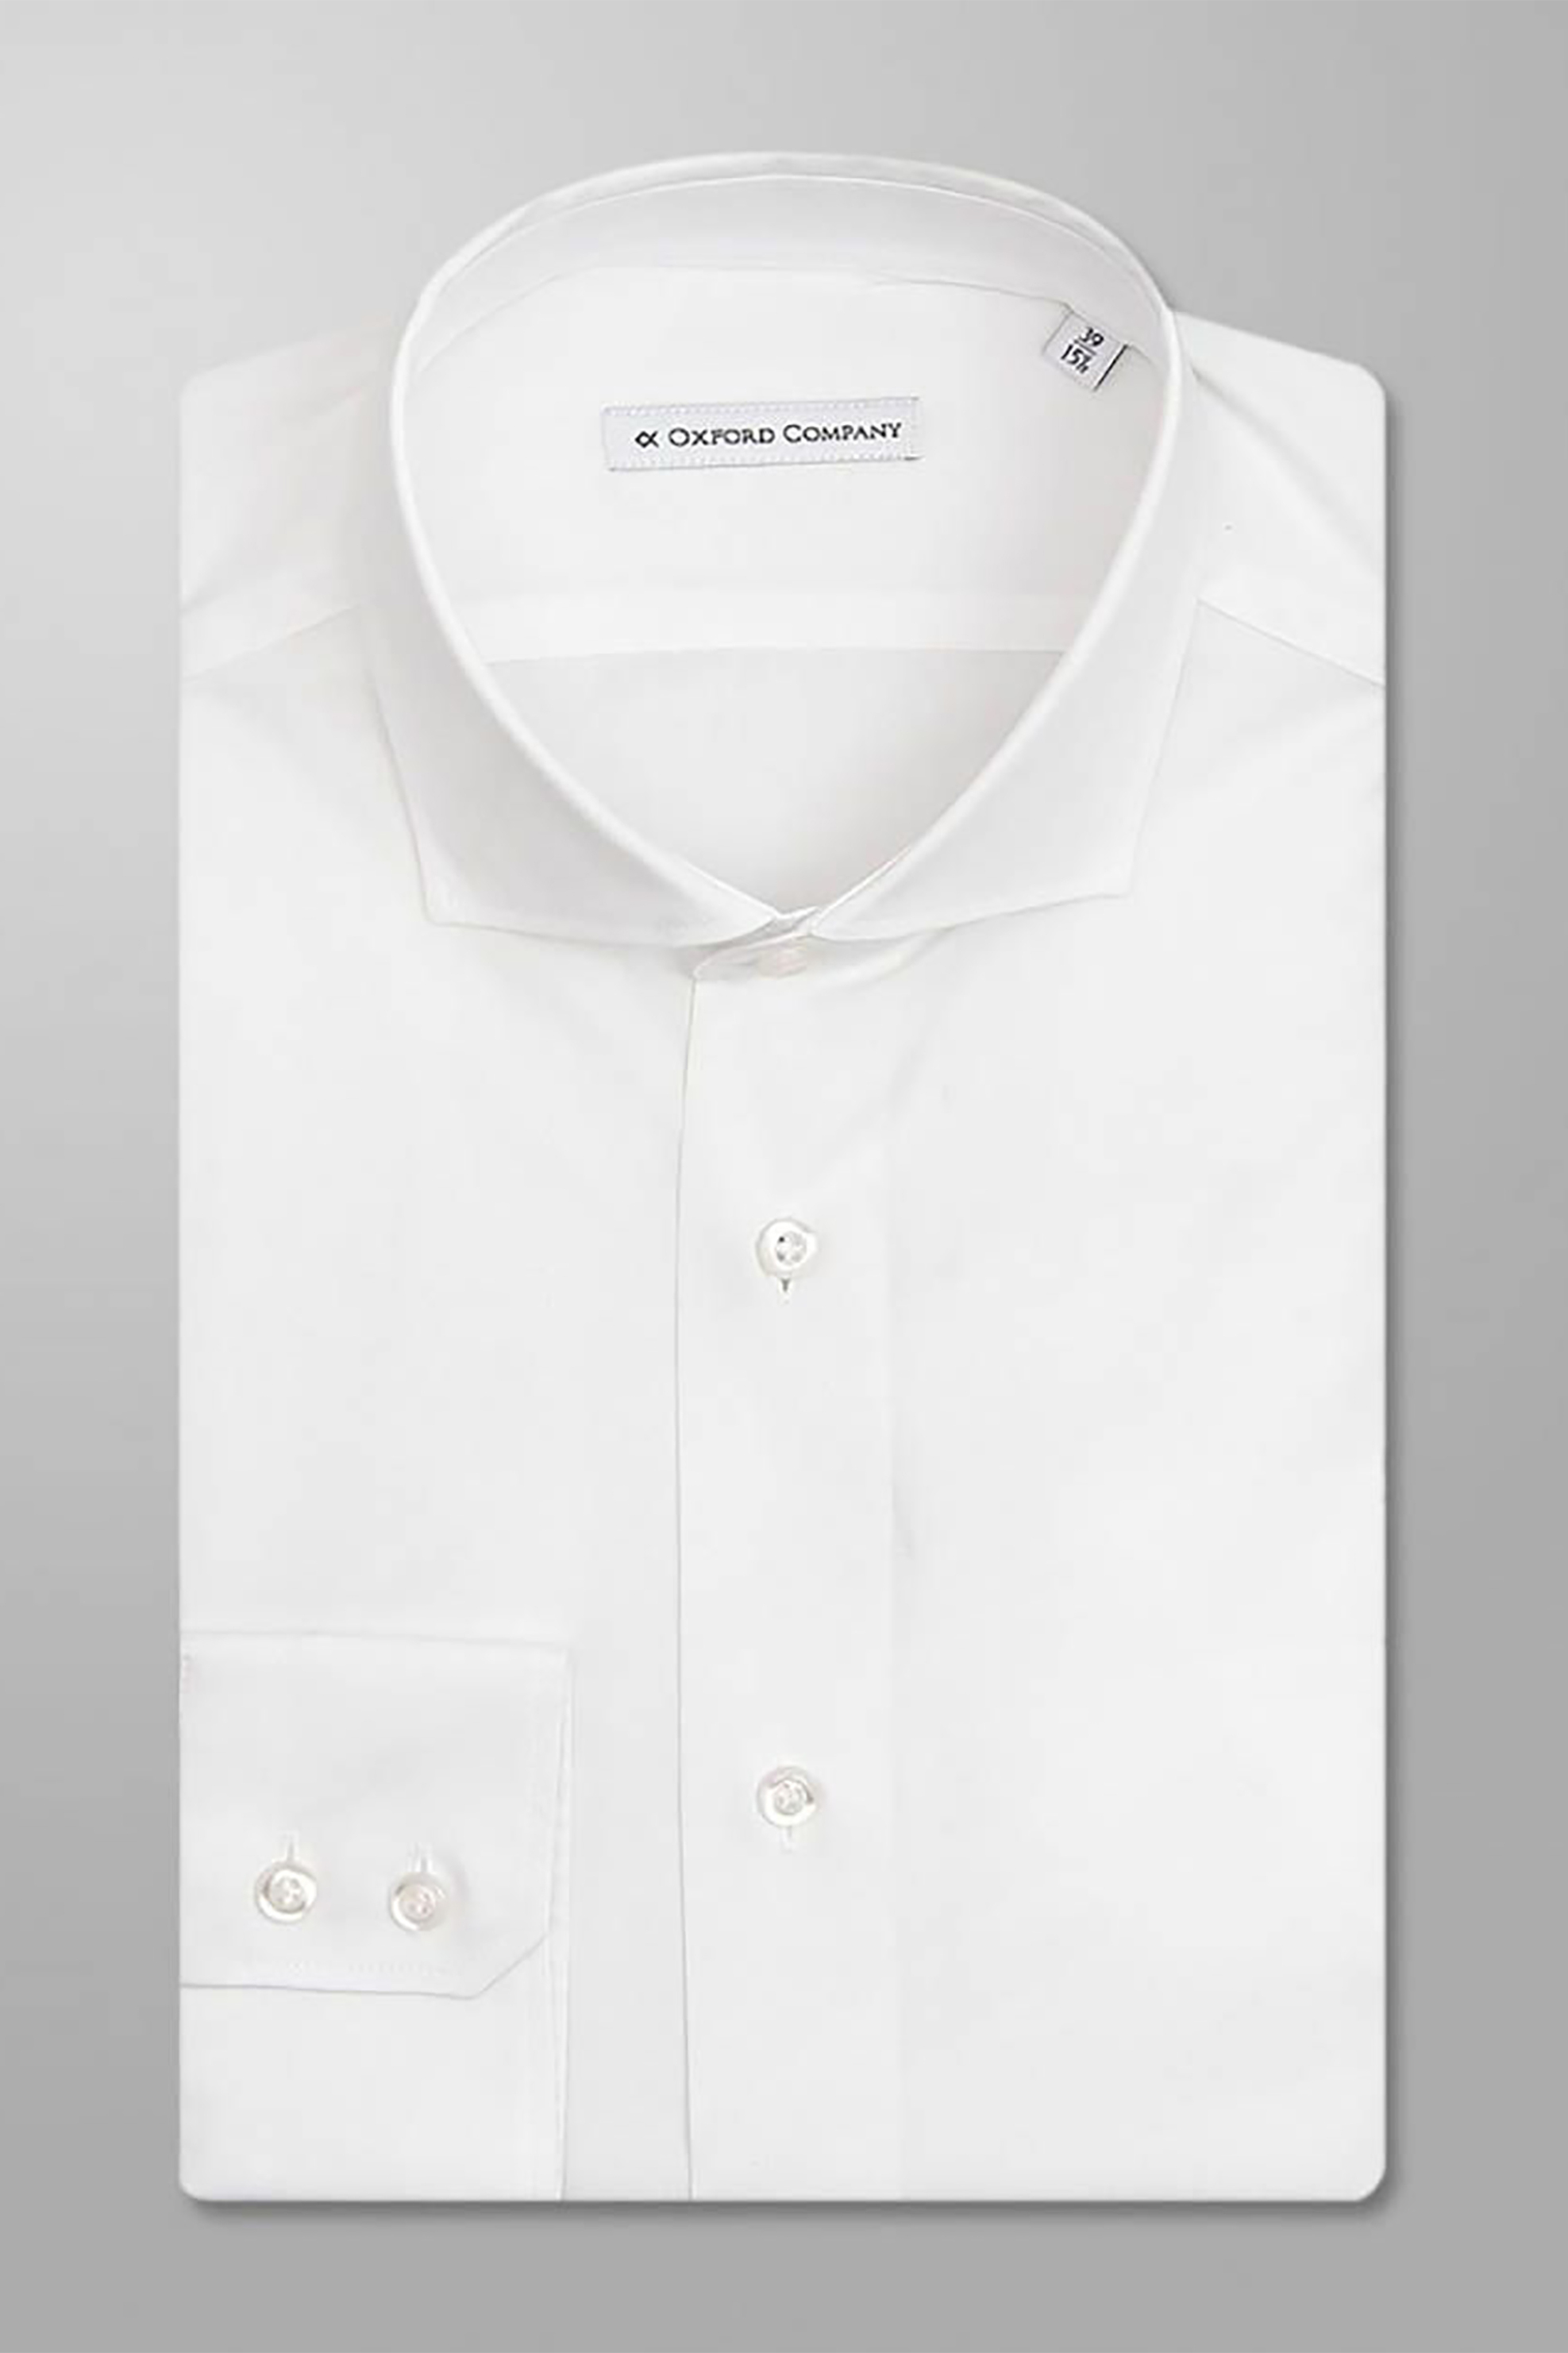 Άνδρας > ΡΟΥΧΑ > Πουκάμισα > Casual Oxford Company ανδρικό μακρυμάνικο πουκάμισο "Roxy" Slim Fit - M111NRE21.01 Λευκό